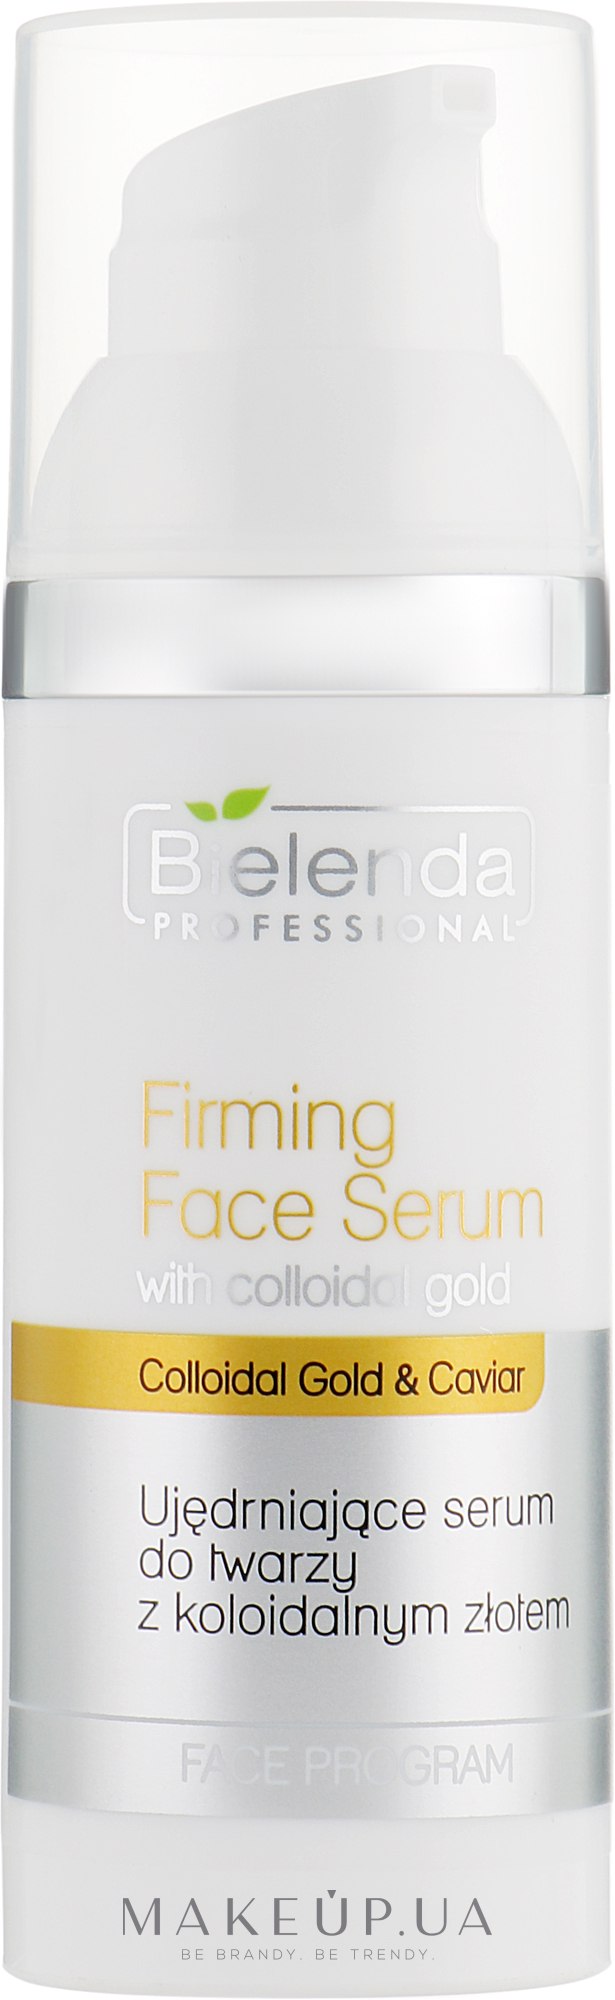 Укрепляющая сыворотка для лица с коллоидным золотом - Bielenda Professional Program Face Firming Face Serum With Colloidal Gold — фото 50ml